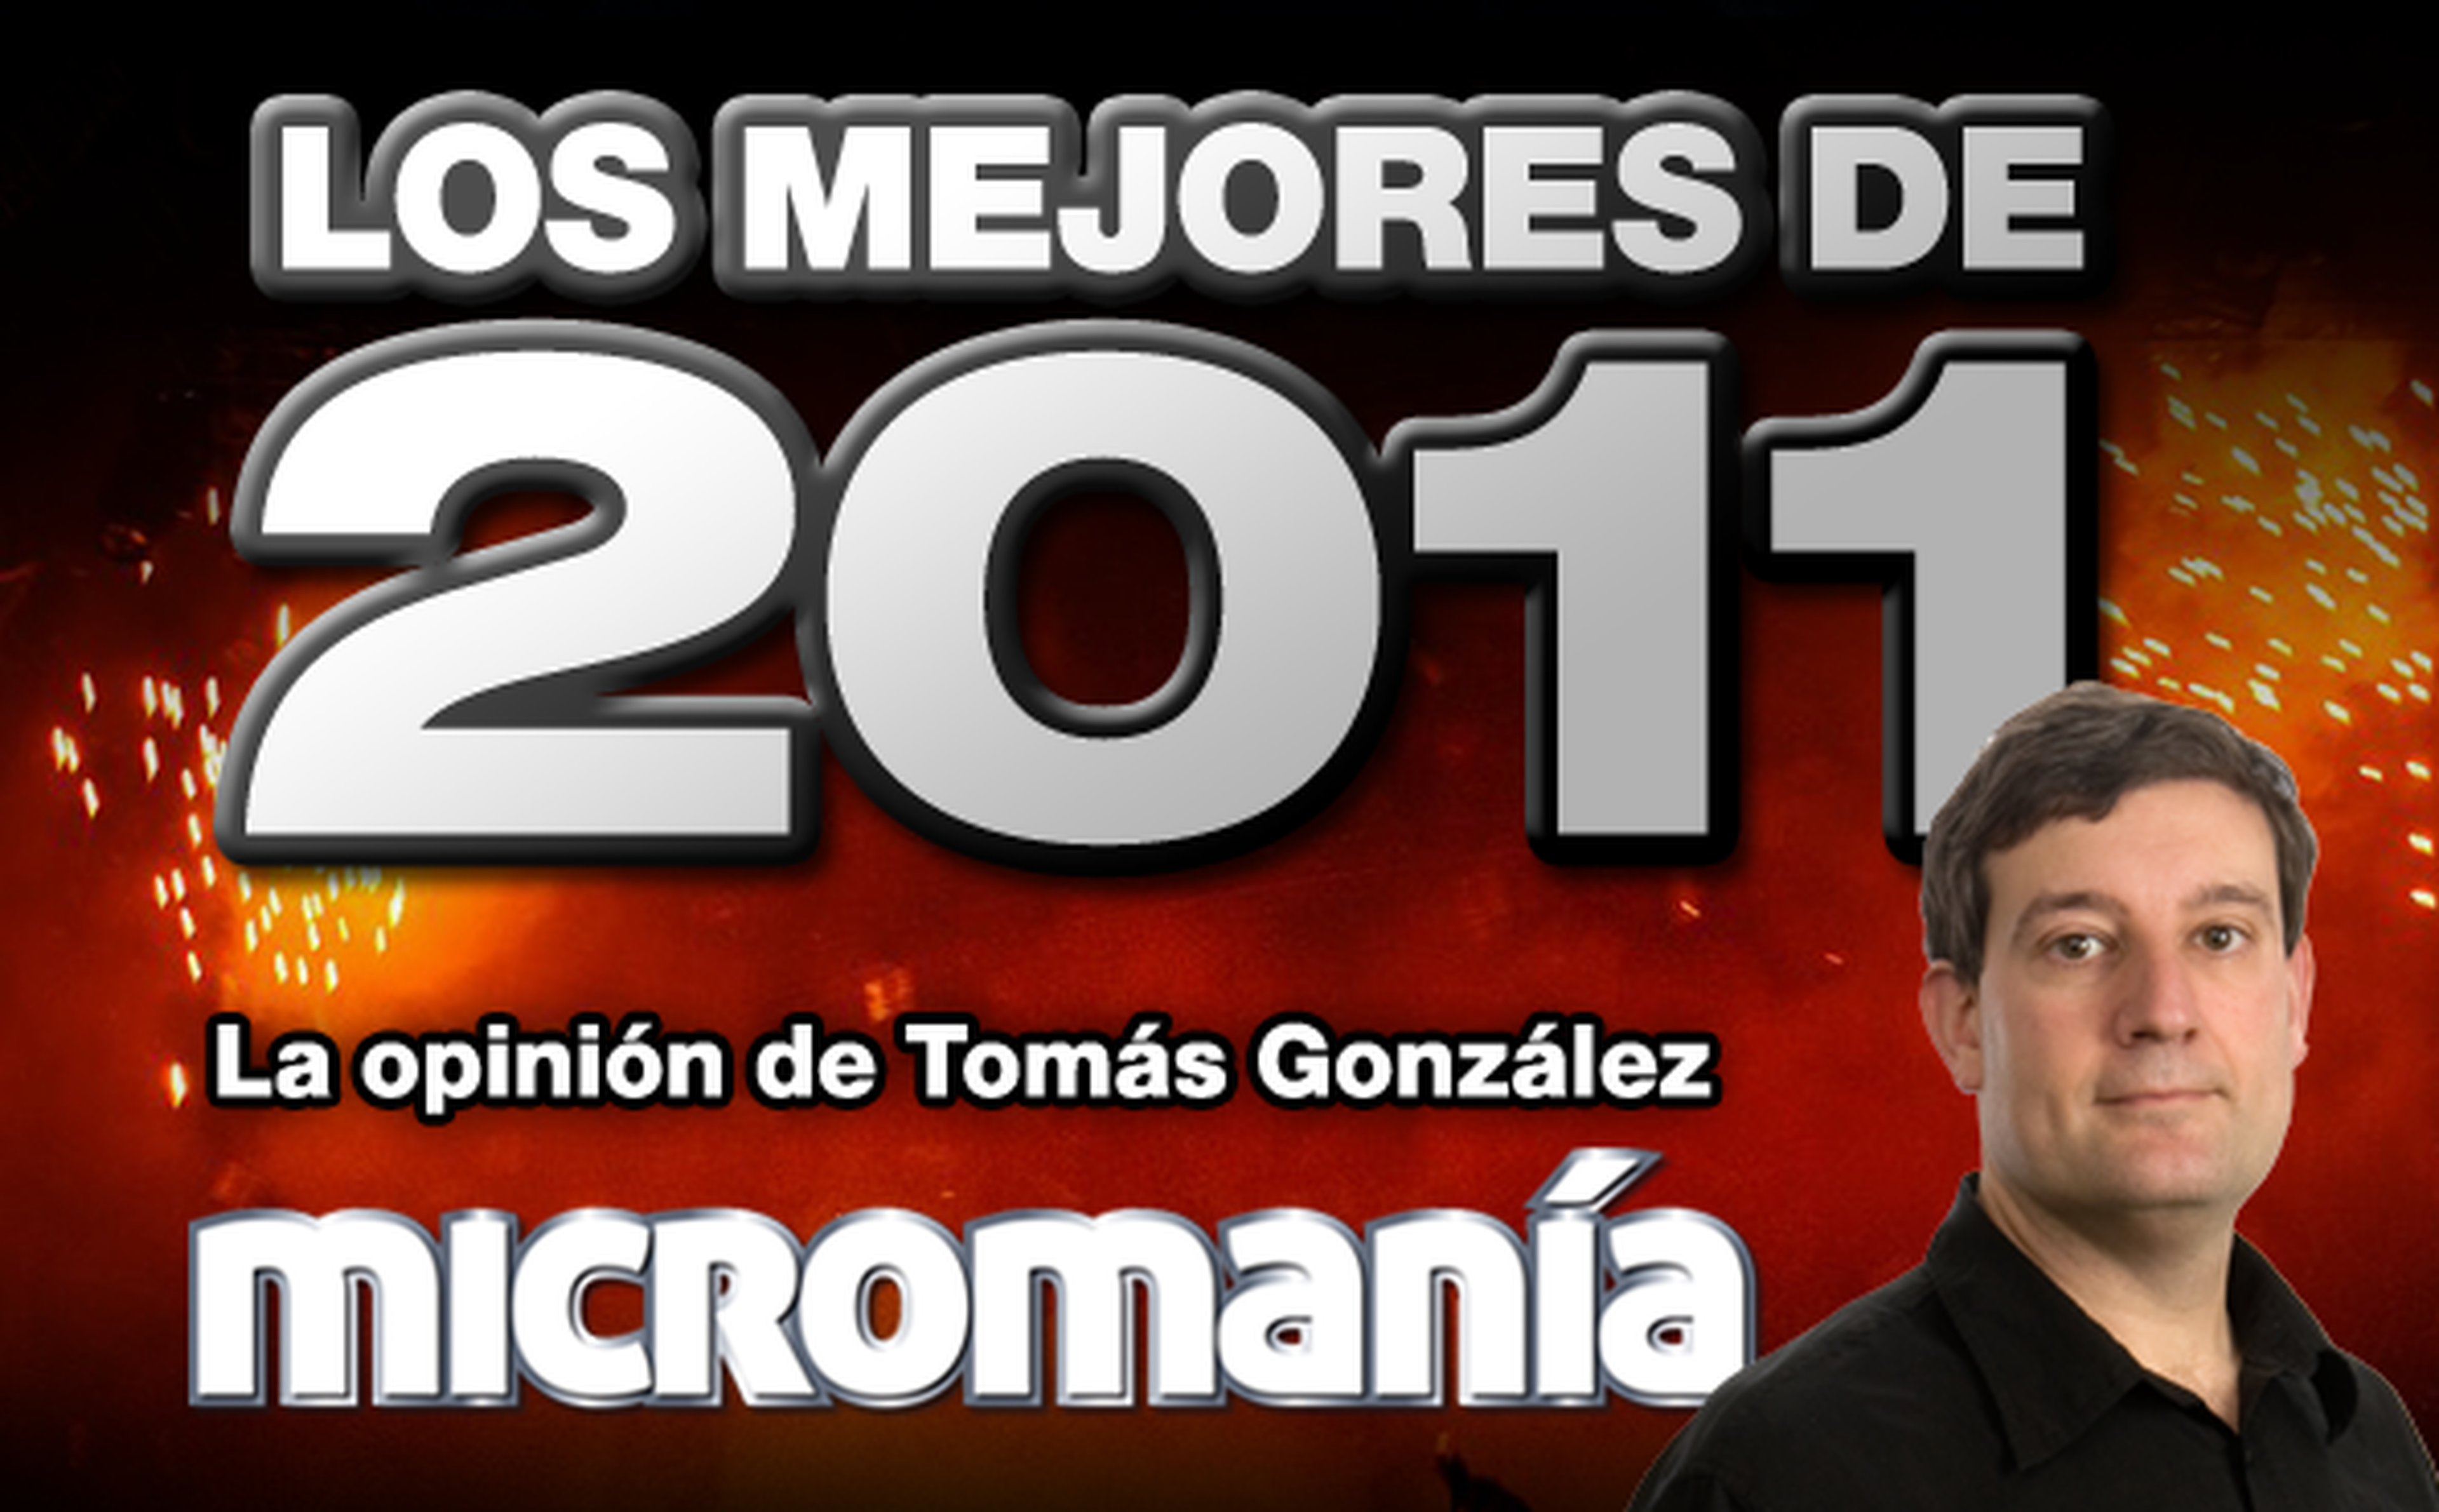 Los mejores de 2011: Tomás González